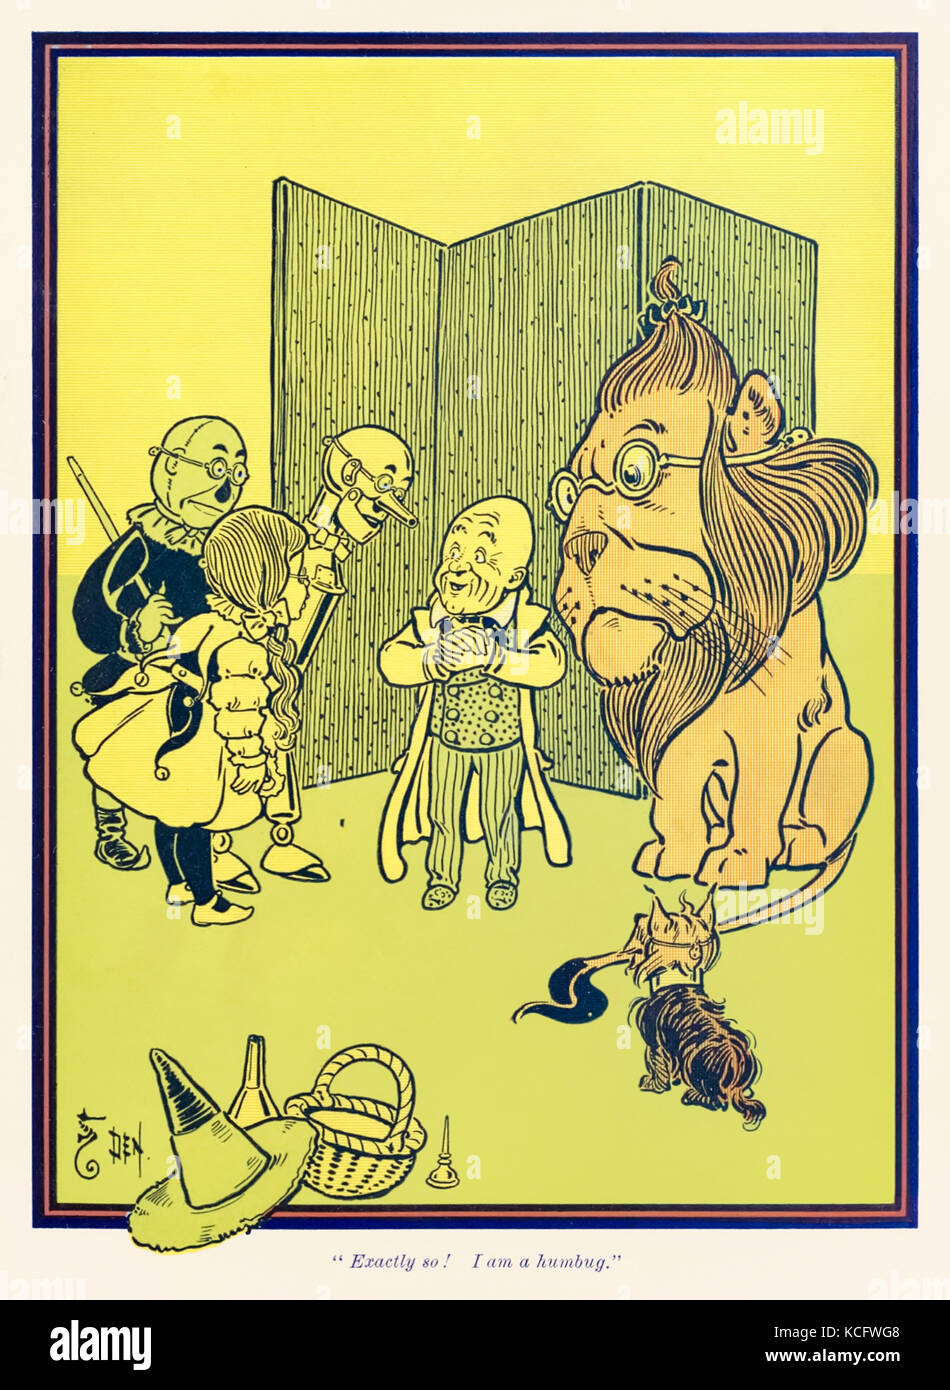 "C'est ça ! Je suis une blague." de "The Wonderful Wizard of Oz' par L. Frank Baum (1856-1919) avec des photos de W. W. Denslow (1856-1915). Voir plus d'informations ci-dessous. Banque D'Images